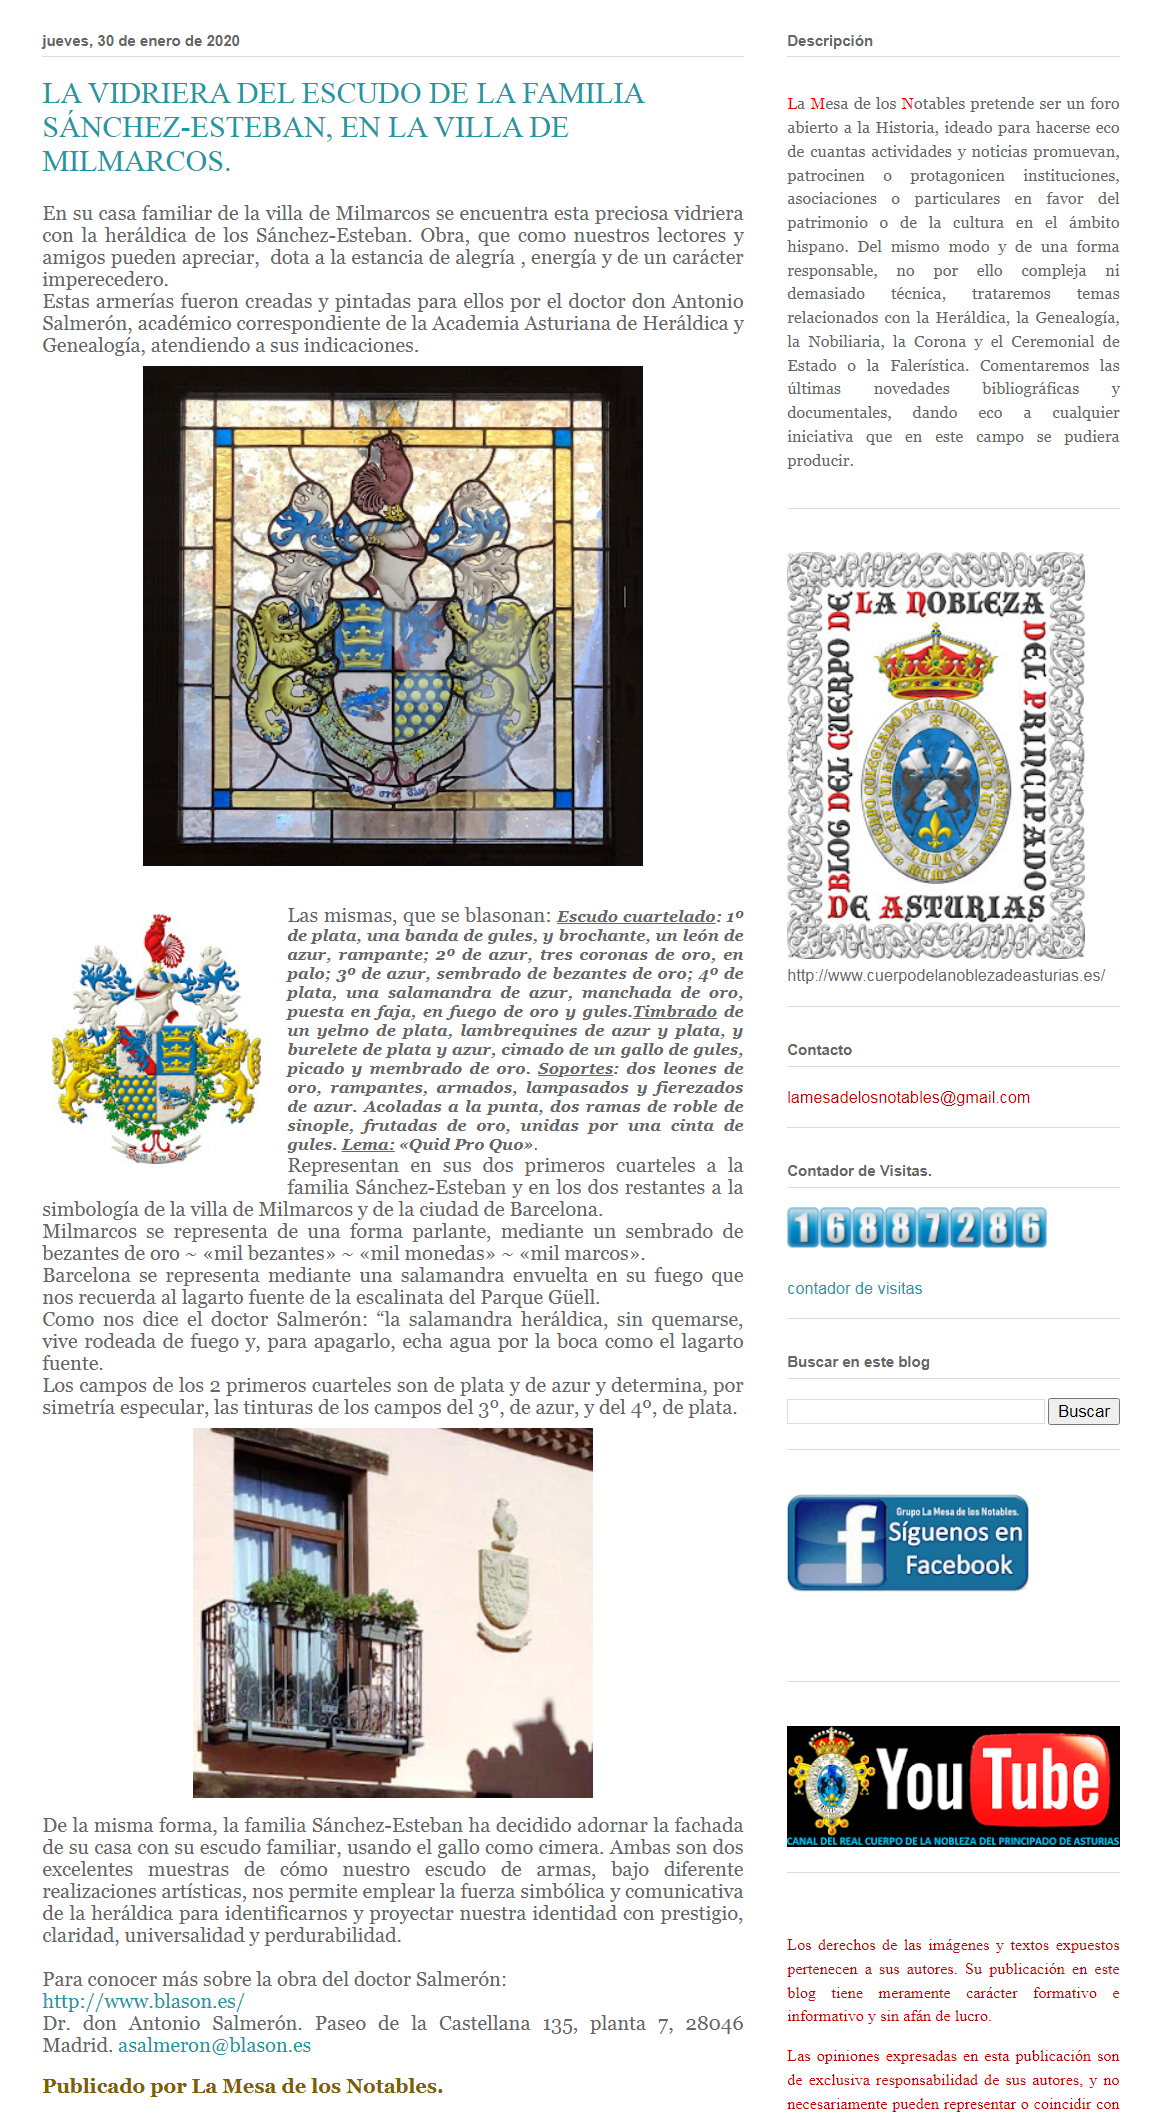 La vidriera del escudo de la familia Snchez-Esteban en la villa de Milmarcos